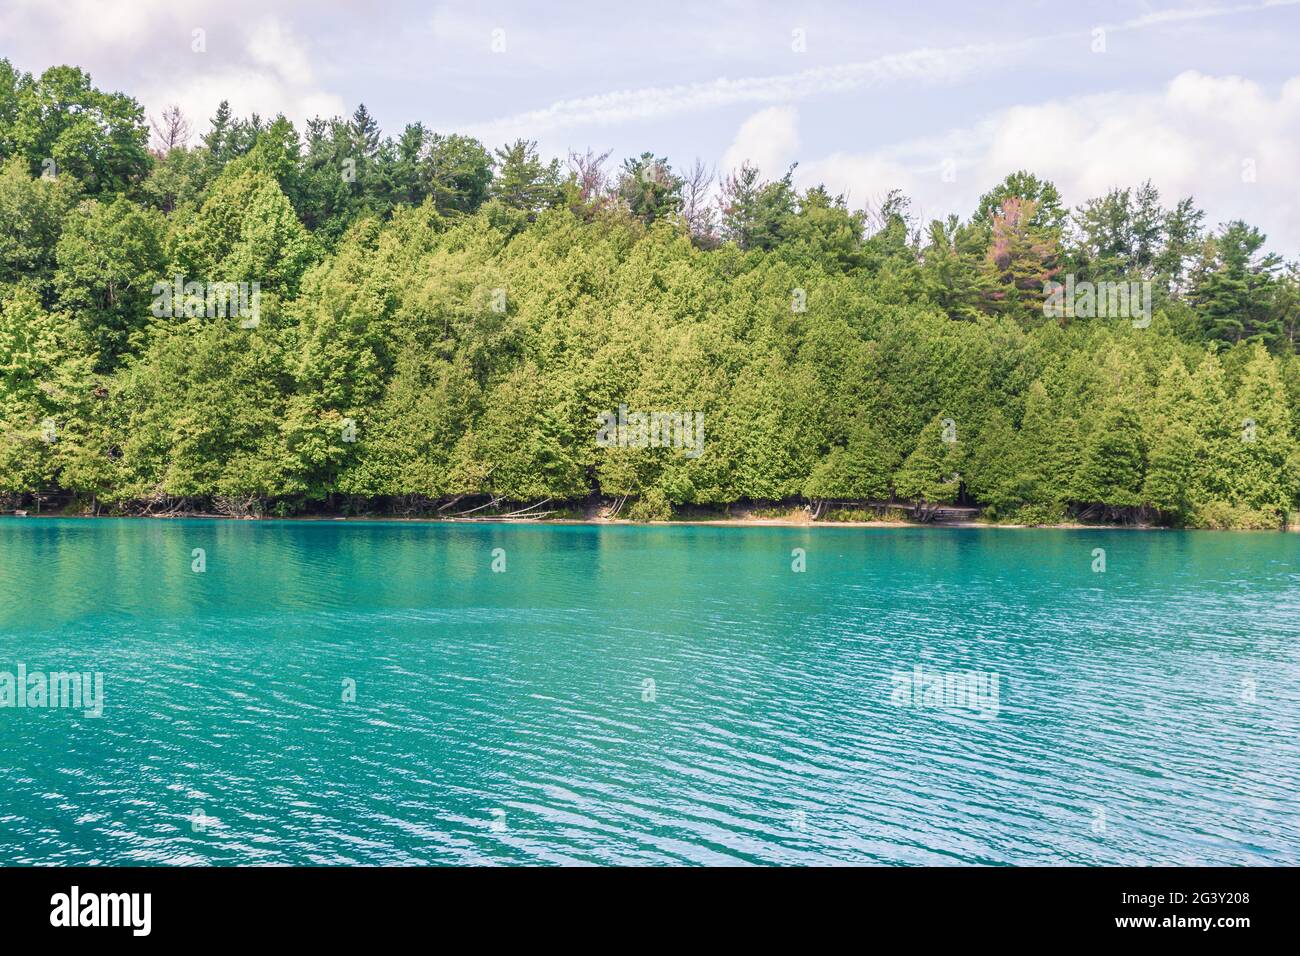 Wunderschöne Seeszene, mit einem von Bäumen gesäumten Ufer und türkisfarbenem Wasser, aufgenommen in Syracuse NY, USA. Stockfoto